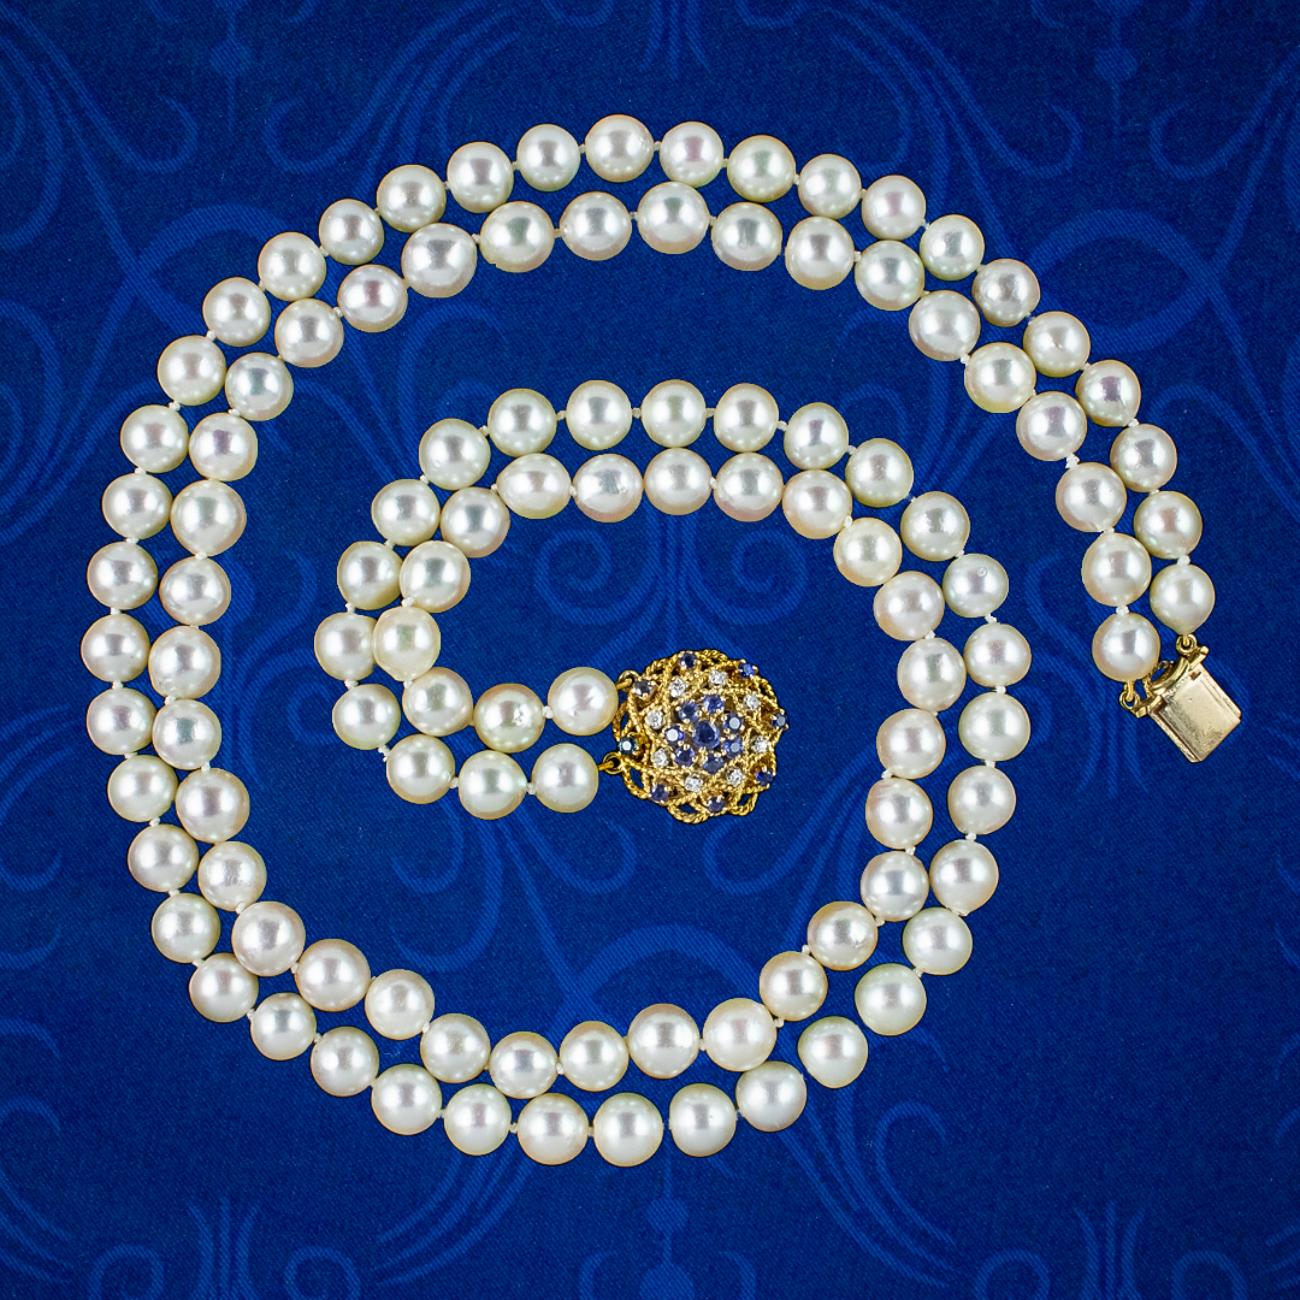 Eine edle Vintage-Perlenmatinee-Halskette aus dem späten 20. Jahrhundert mit zwei Strängen luxuriöser, cremeweißer Zuchtperlen, die außergewöhnlich hell sind und eine glatte, glänzende Oberfläche haben.   

Perlen sind der Geburtsstein des Monats